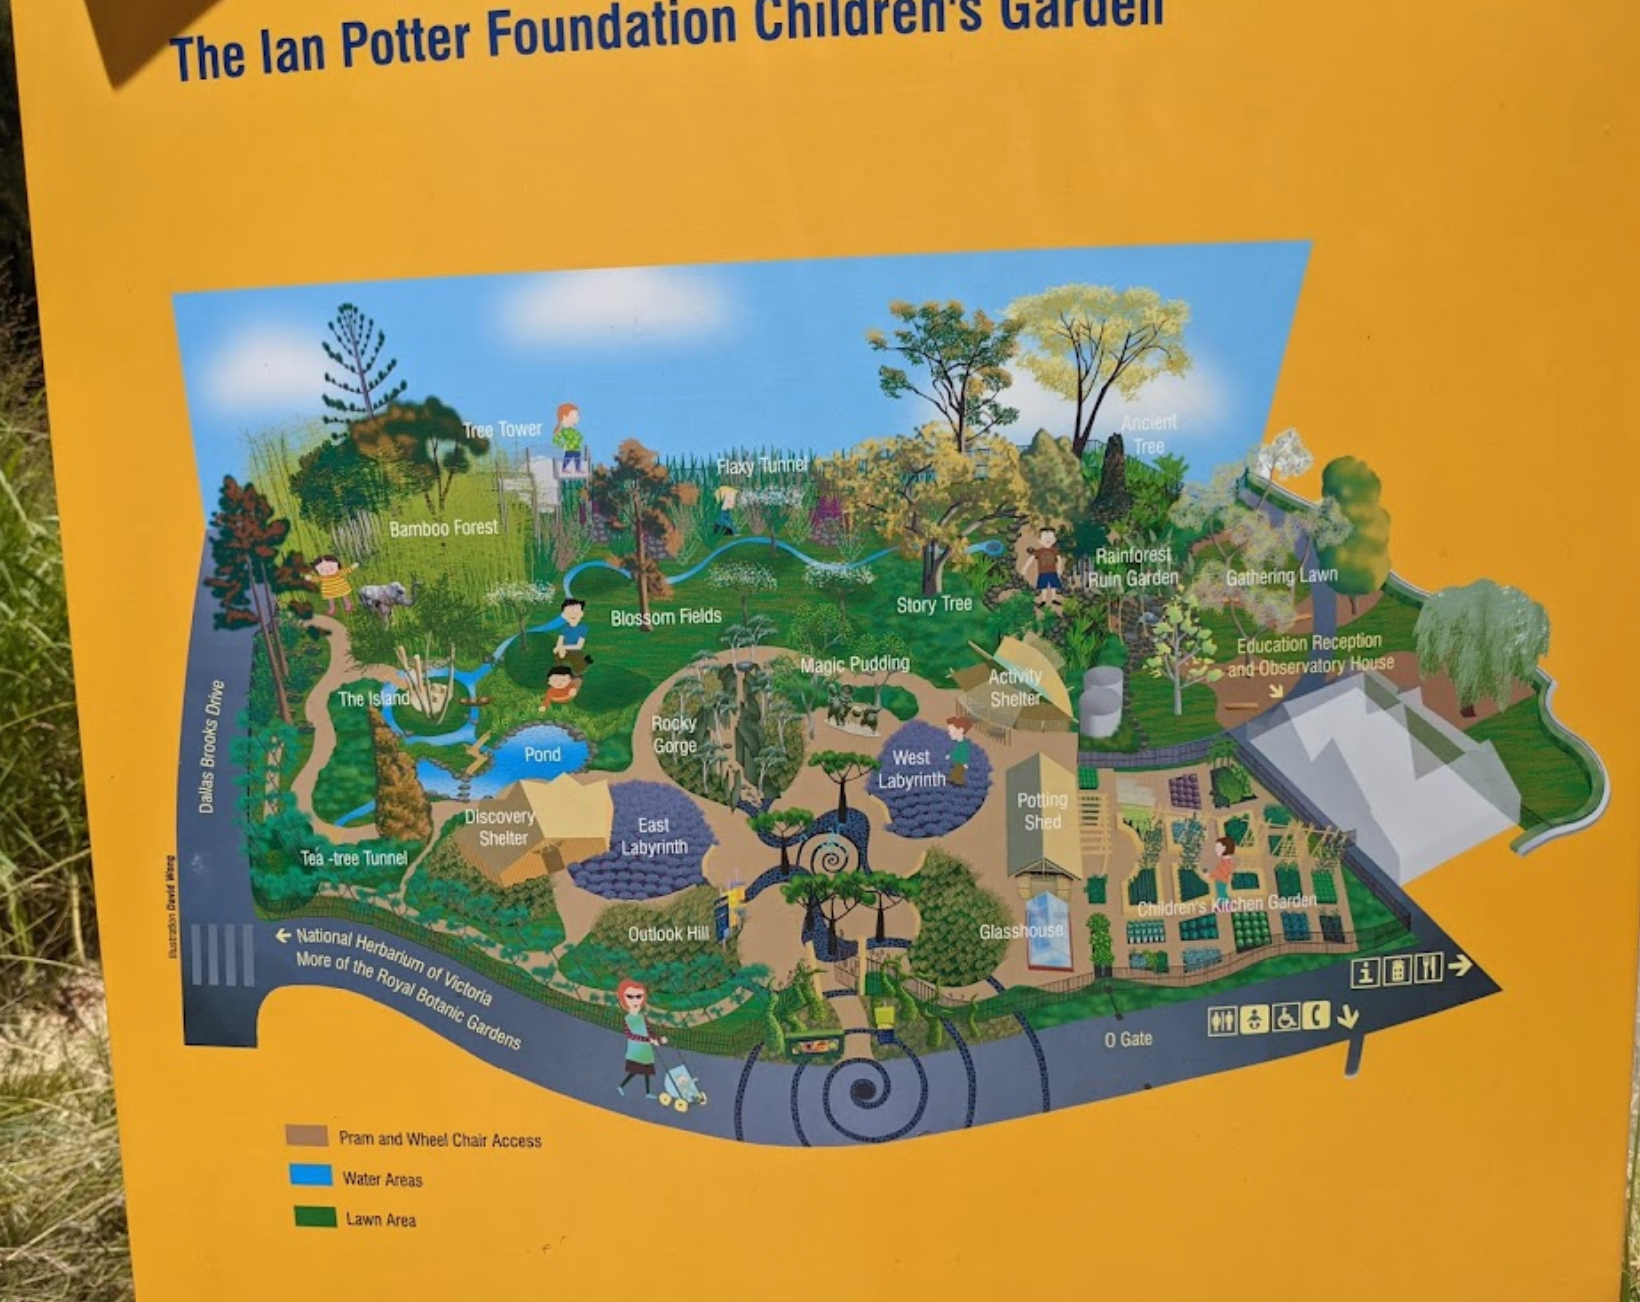 The Ian Potter Foundation Children’s Garden